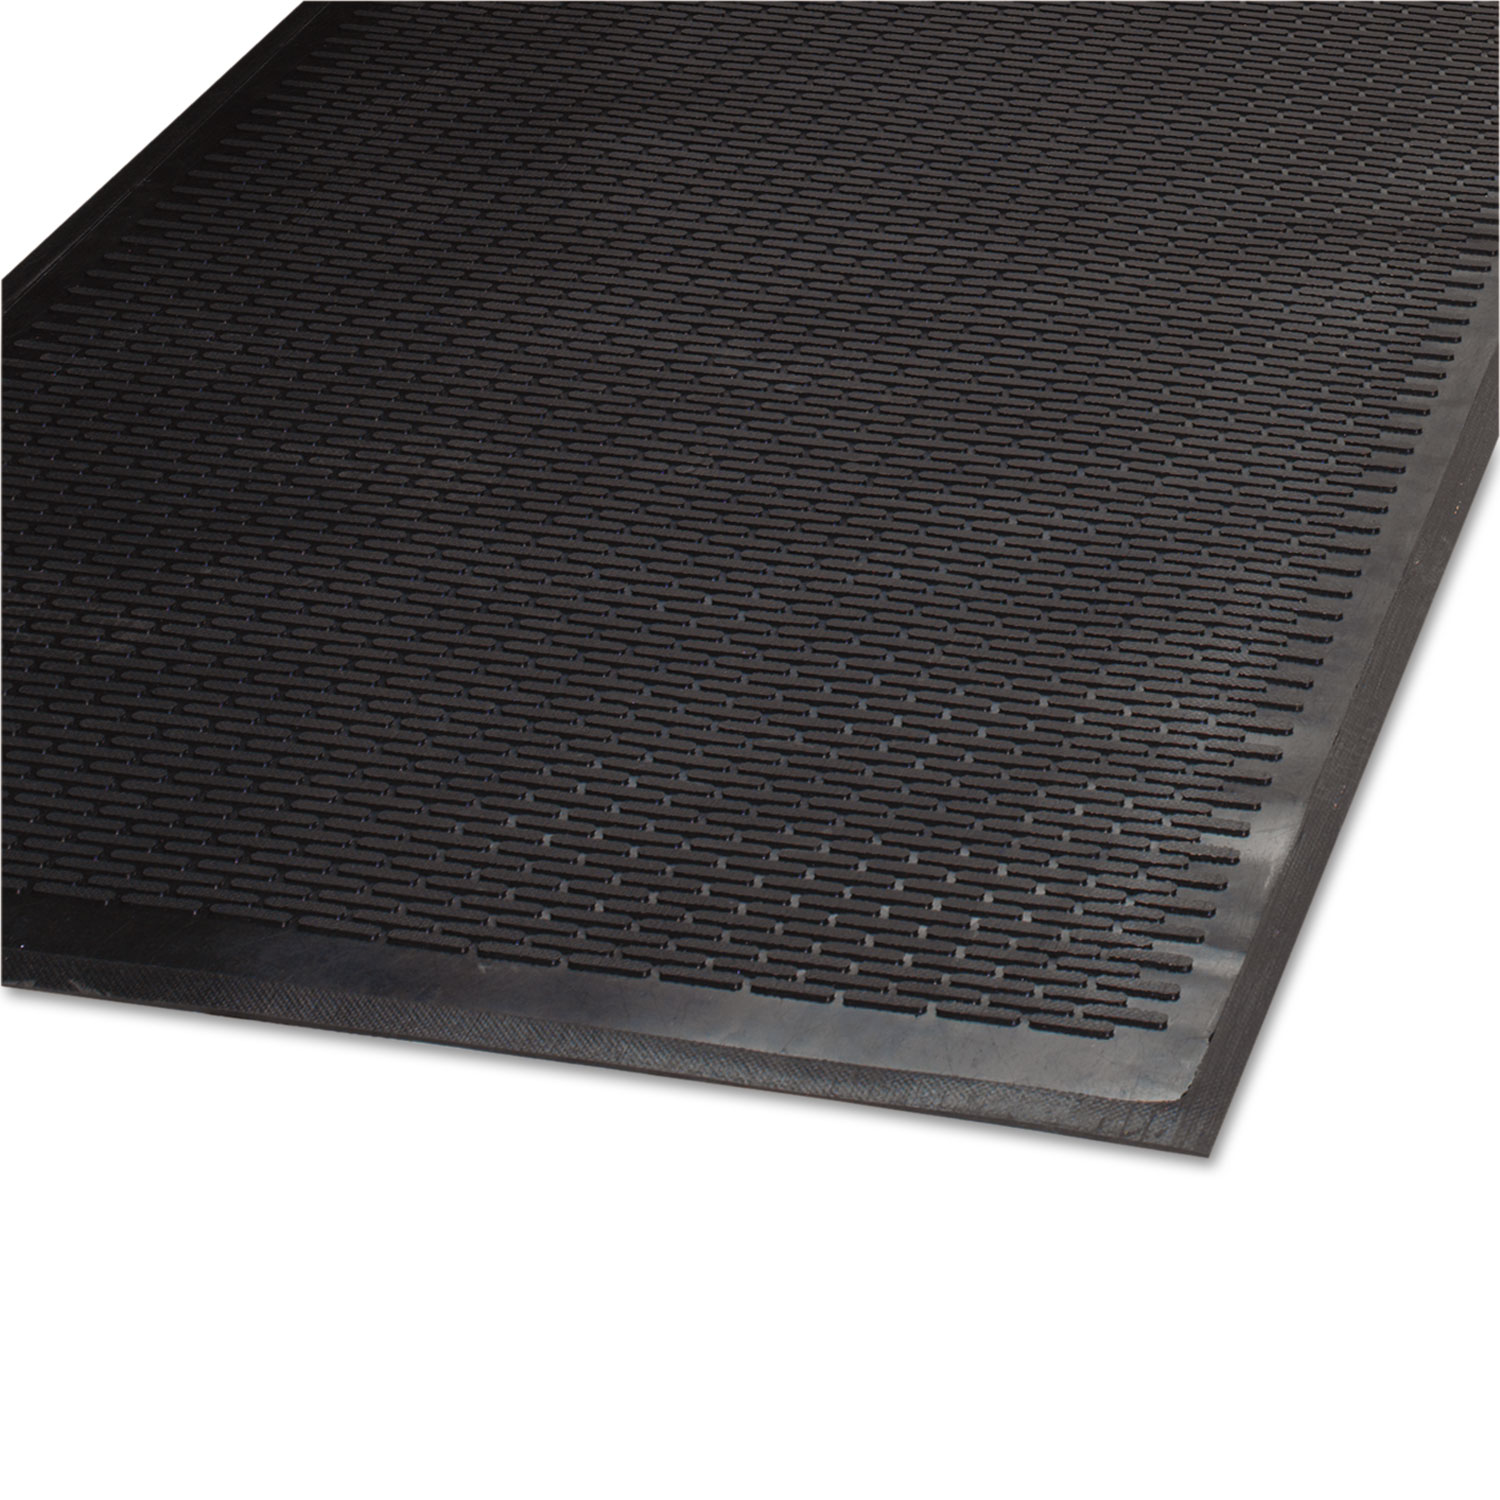  Guardian 14030500 Clean Step Outdoor Rubber Scraper Mat, Polypropylene, 36 x 60, Black (MLL14030500) 